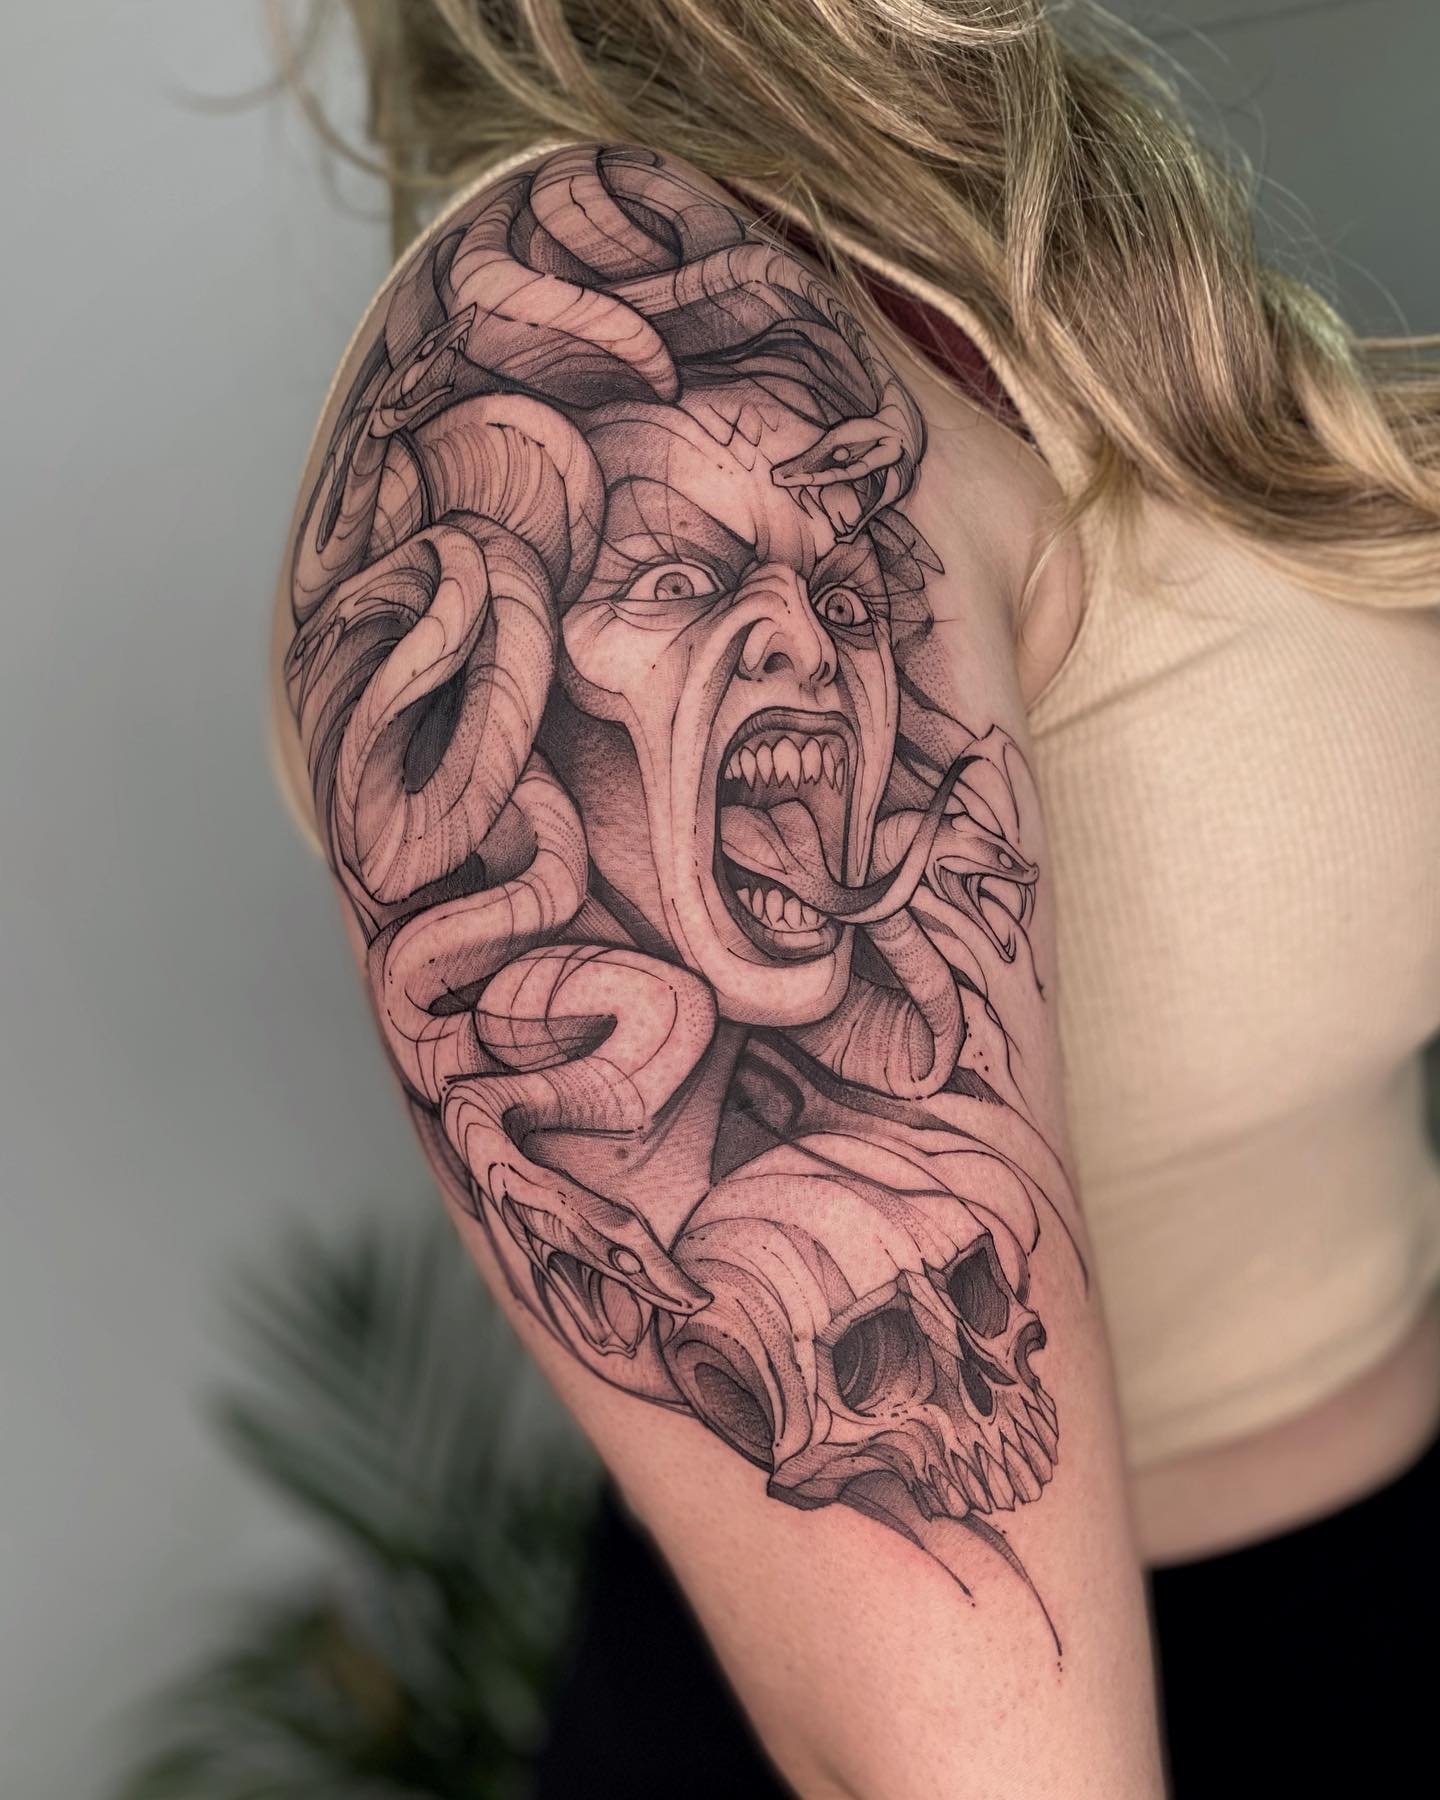 Scary Medusa Half-Sleeve Tattoo